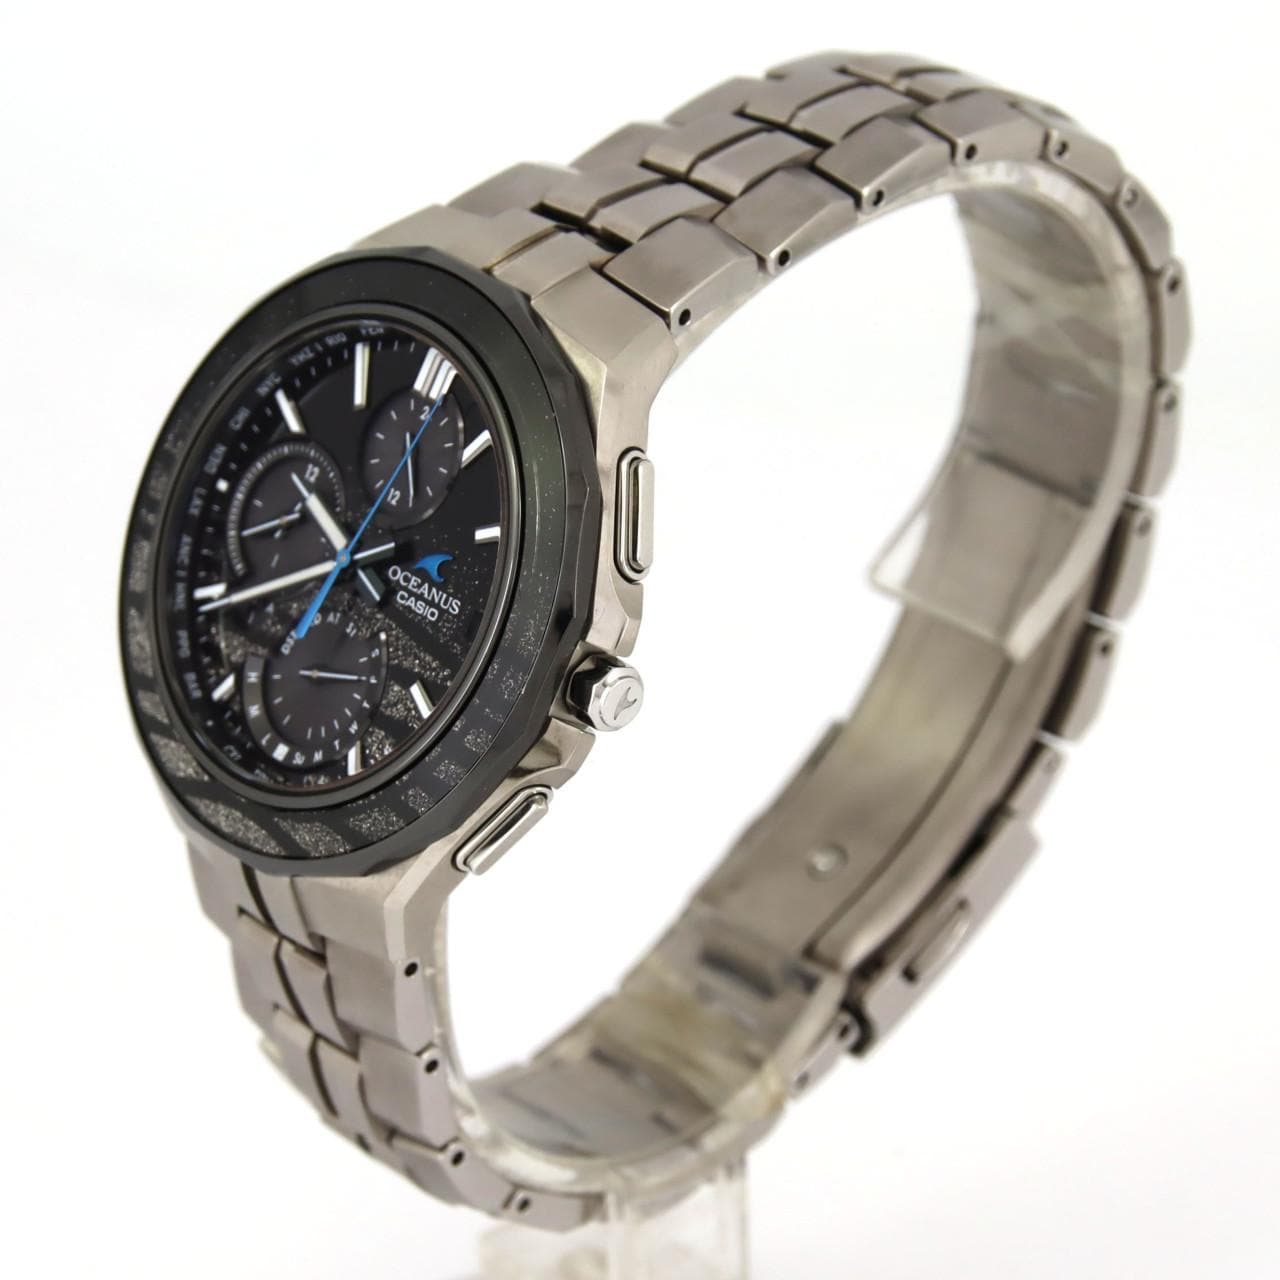 卡西歐 Oceanus Manta 無線電手錶有限公司 OCW-S5000ME-1AJF TI 太陽能石英